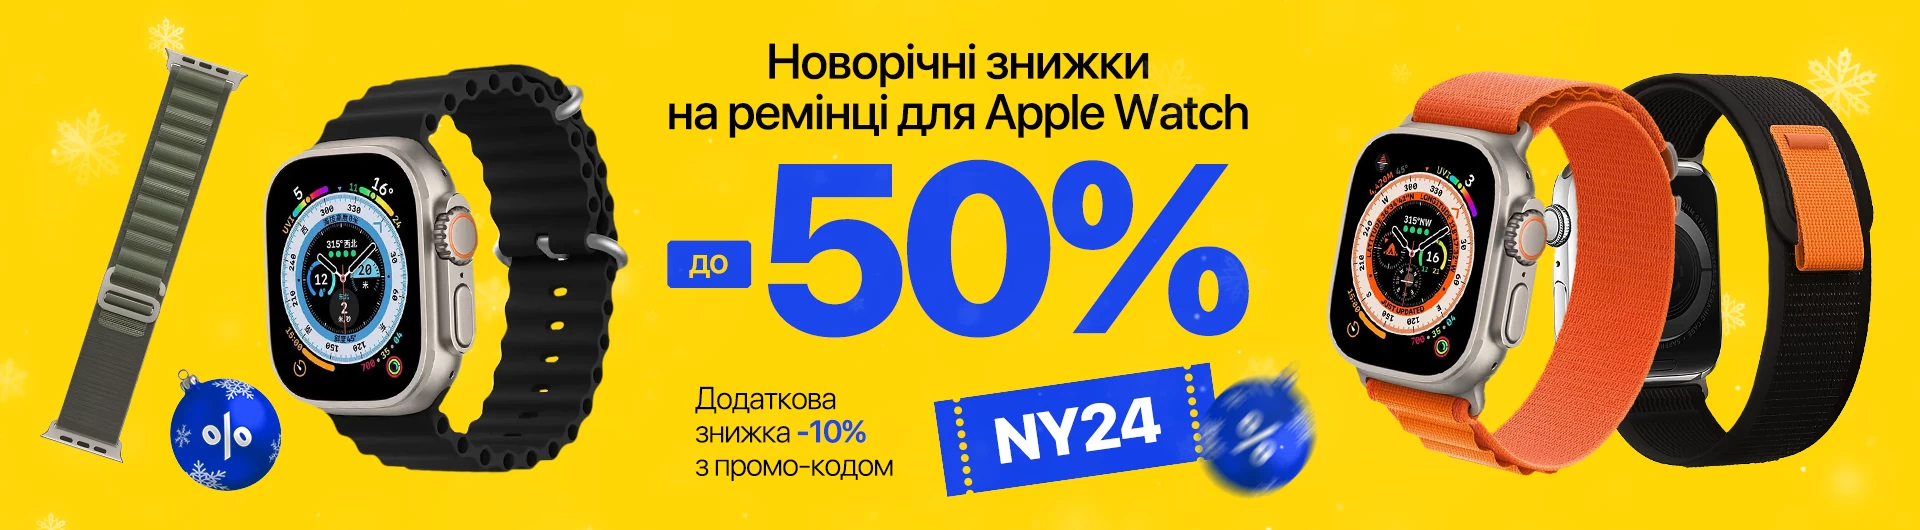 Ремінці для Apple Watch - купуй подарунок у Івана Чохла